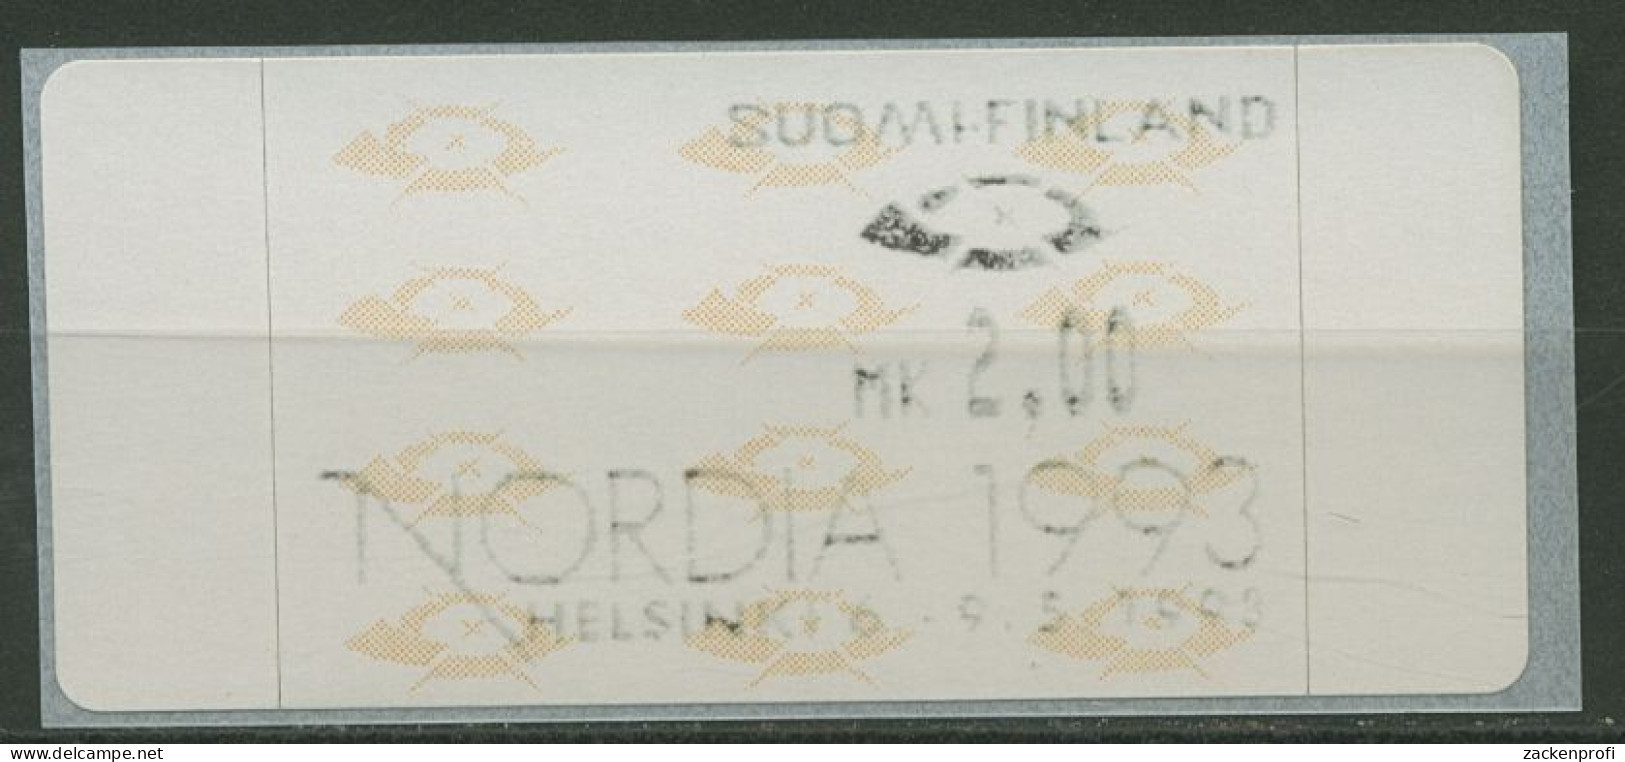 Finnland ATM 1993 Posthörner Einzelwert ATM 12.5 Z1 Postfrisch - Machine Labels [ATM]